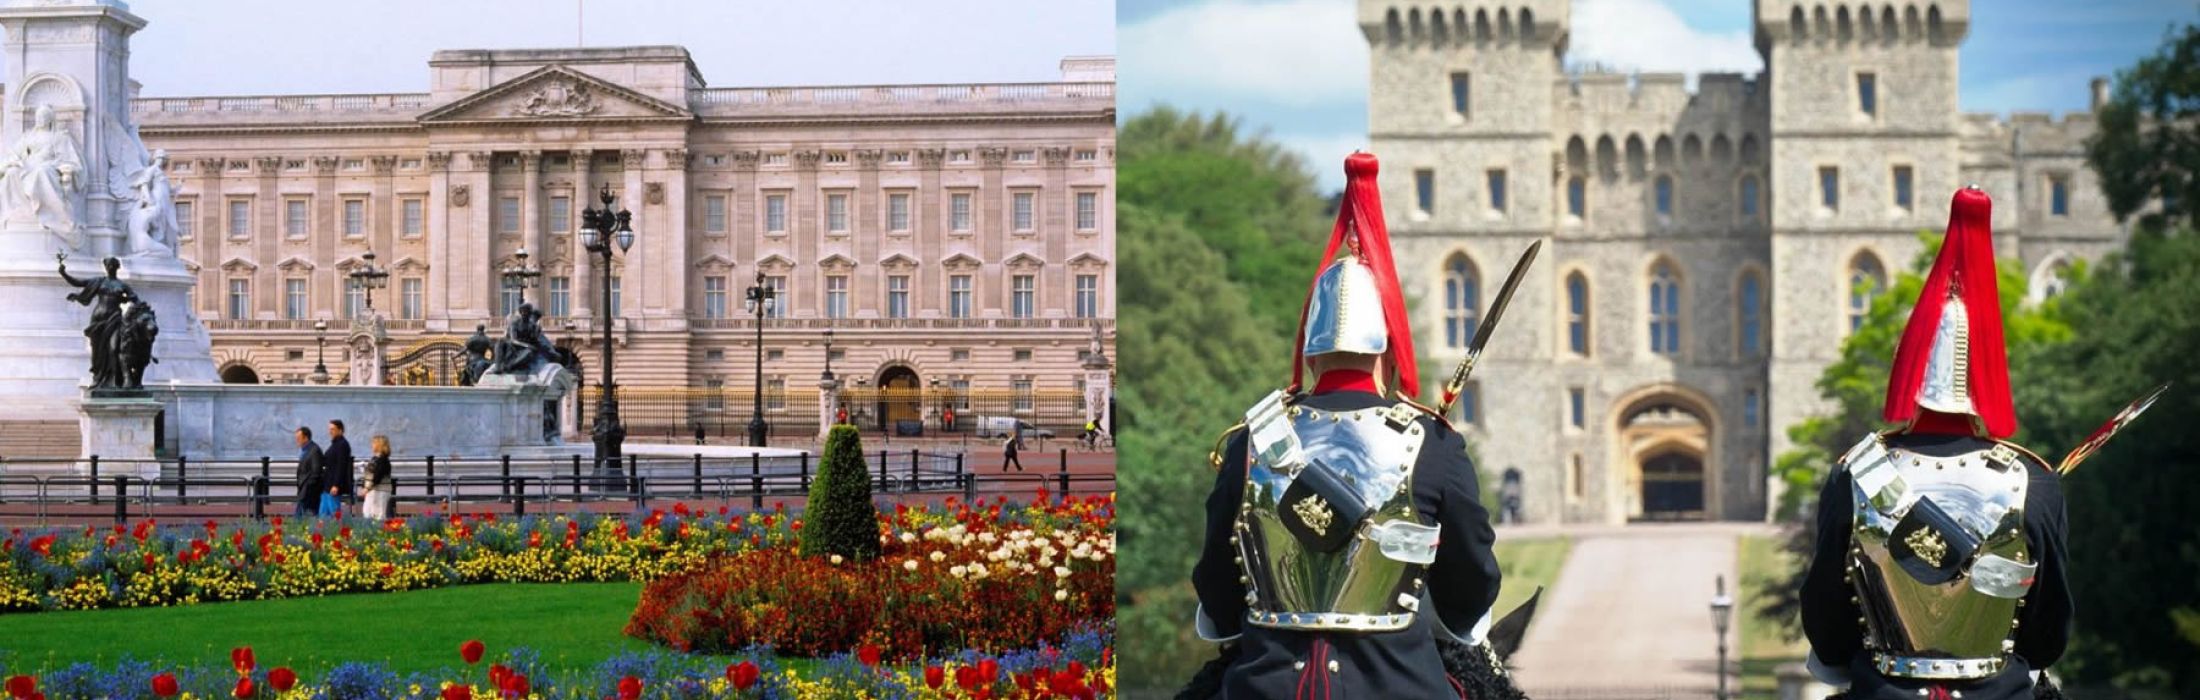 Palacio de Buckingham y Castillo de Windsor en un día